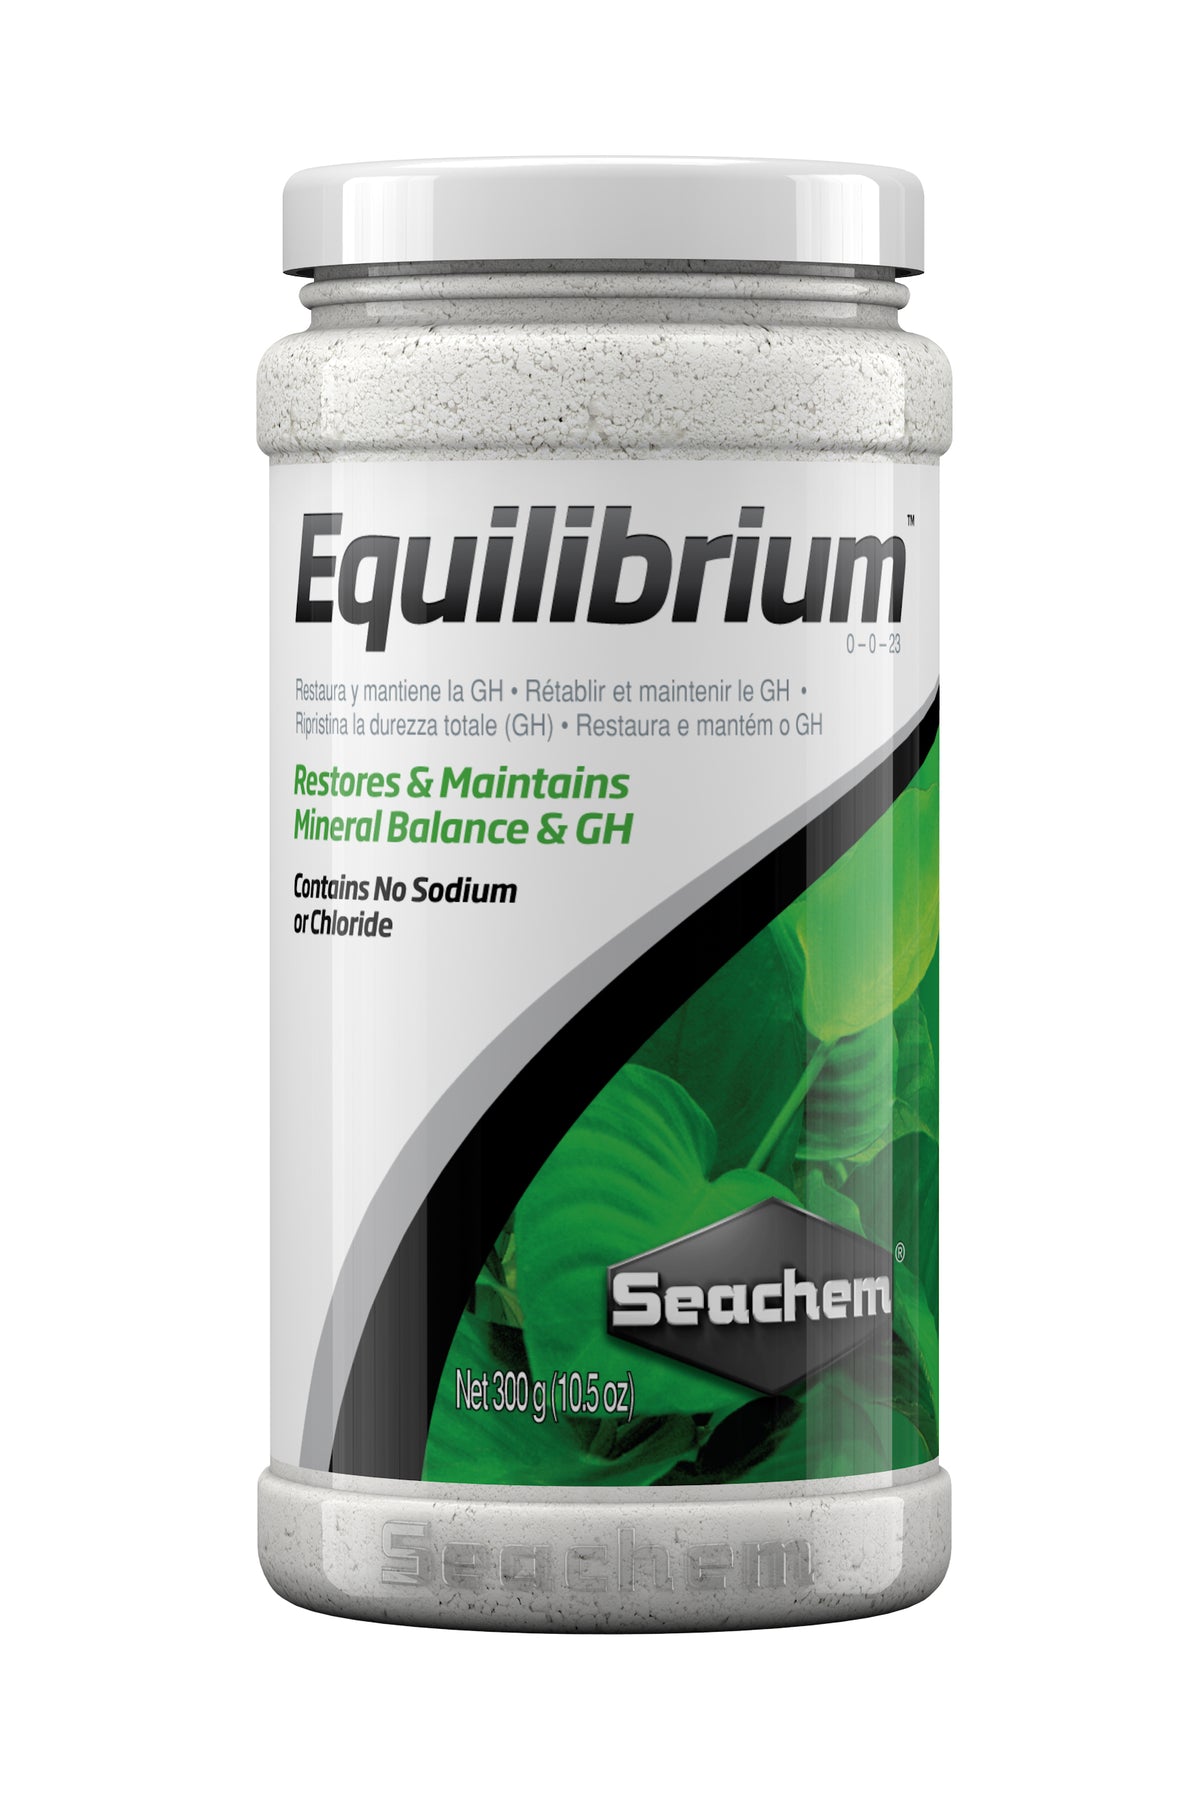 Seachem Equilibrium**